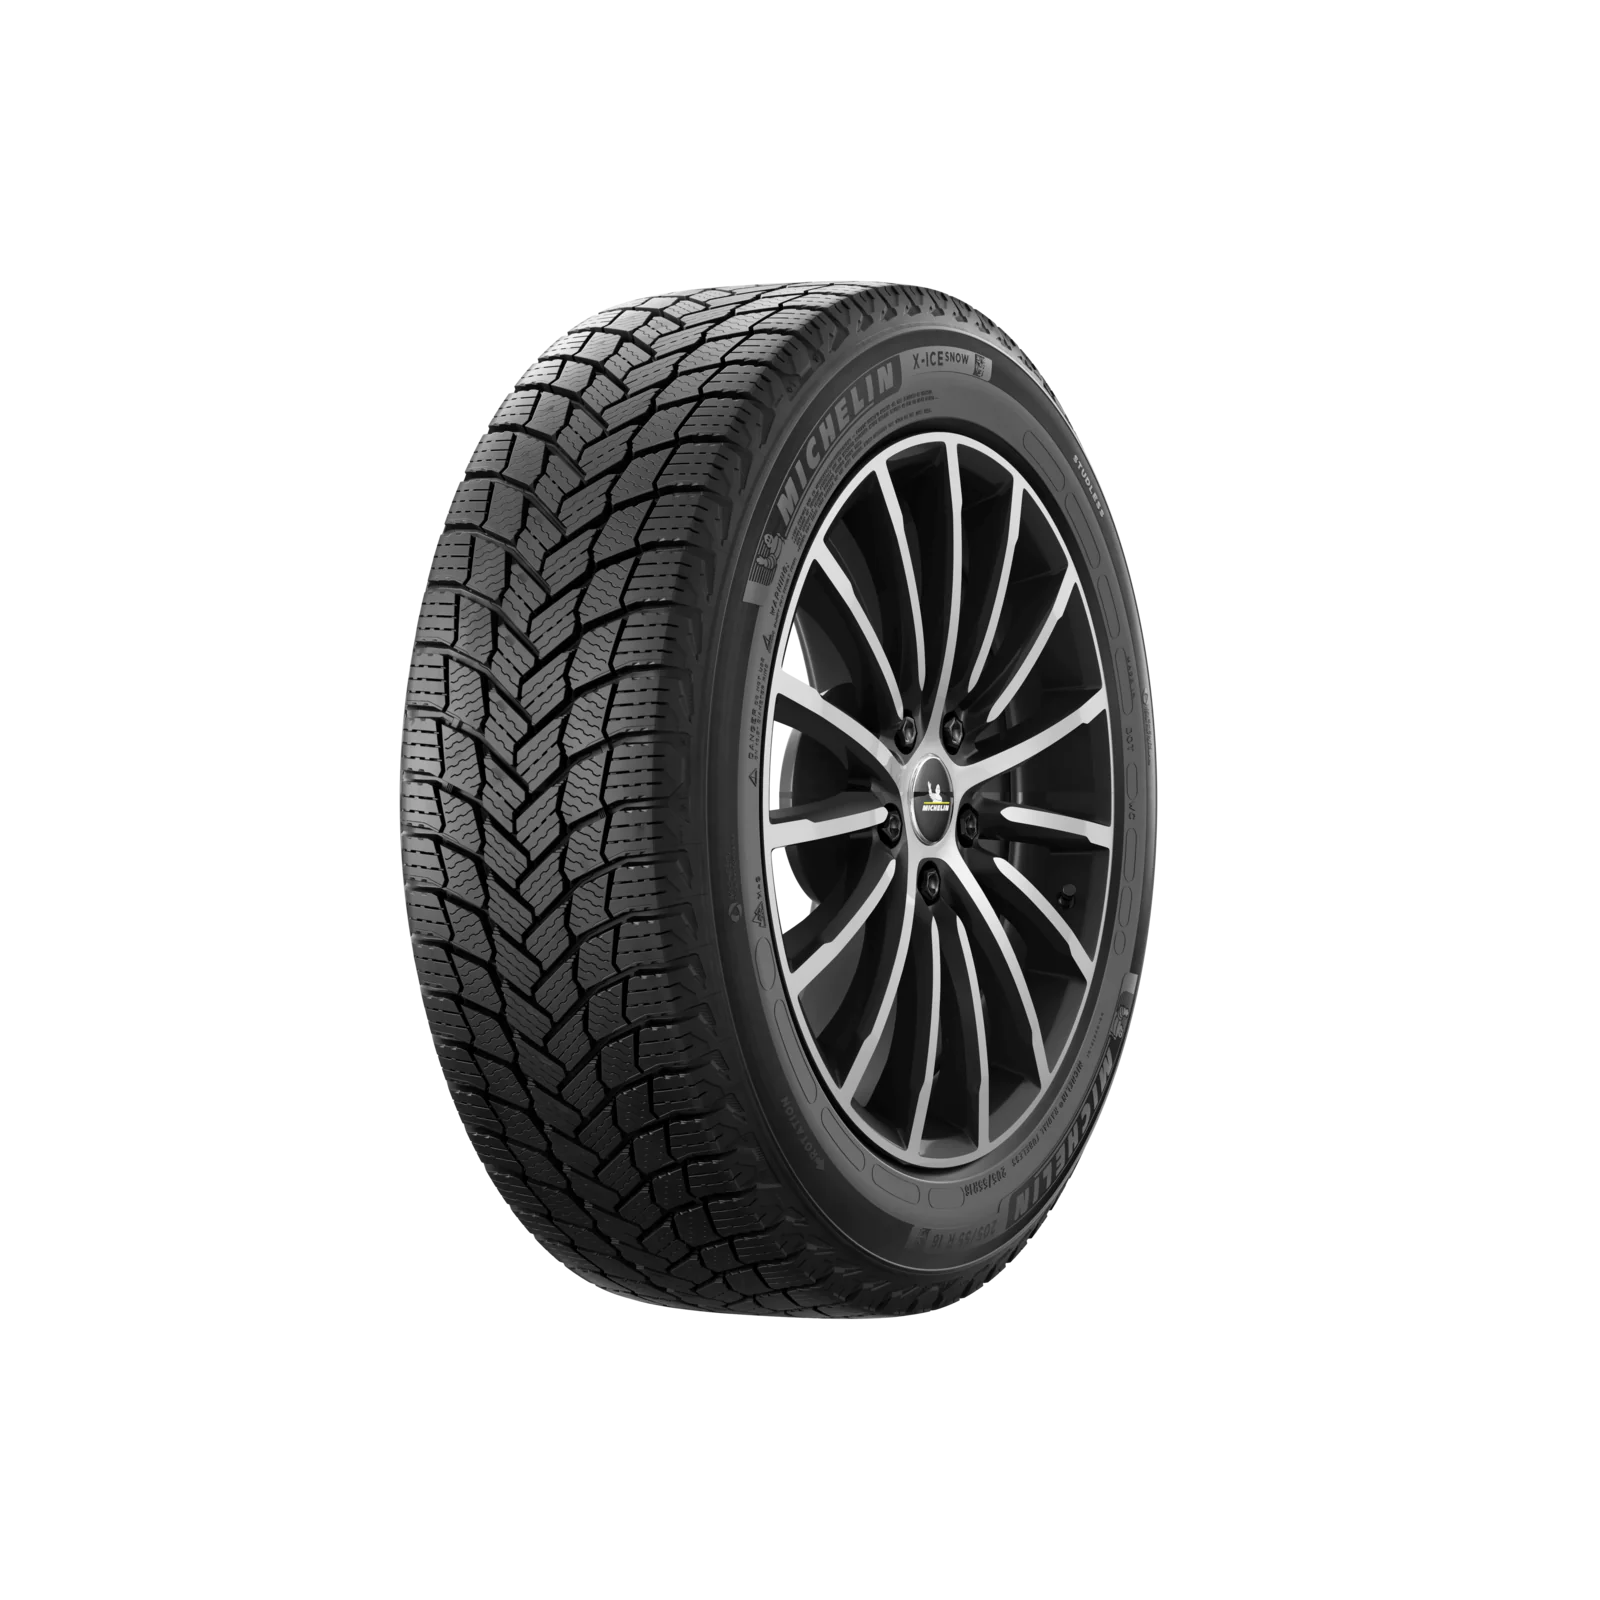 Michelin Michelin 255/65 R17 110T X-ICE SNOW SUV pneumatici nuovi Invernale 